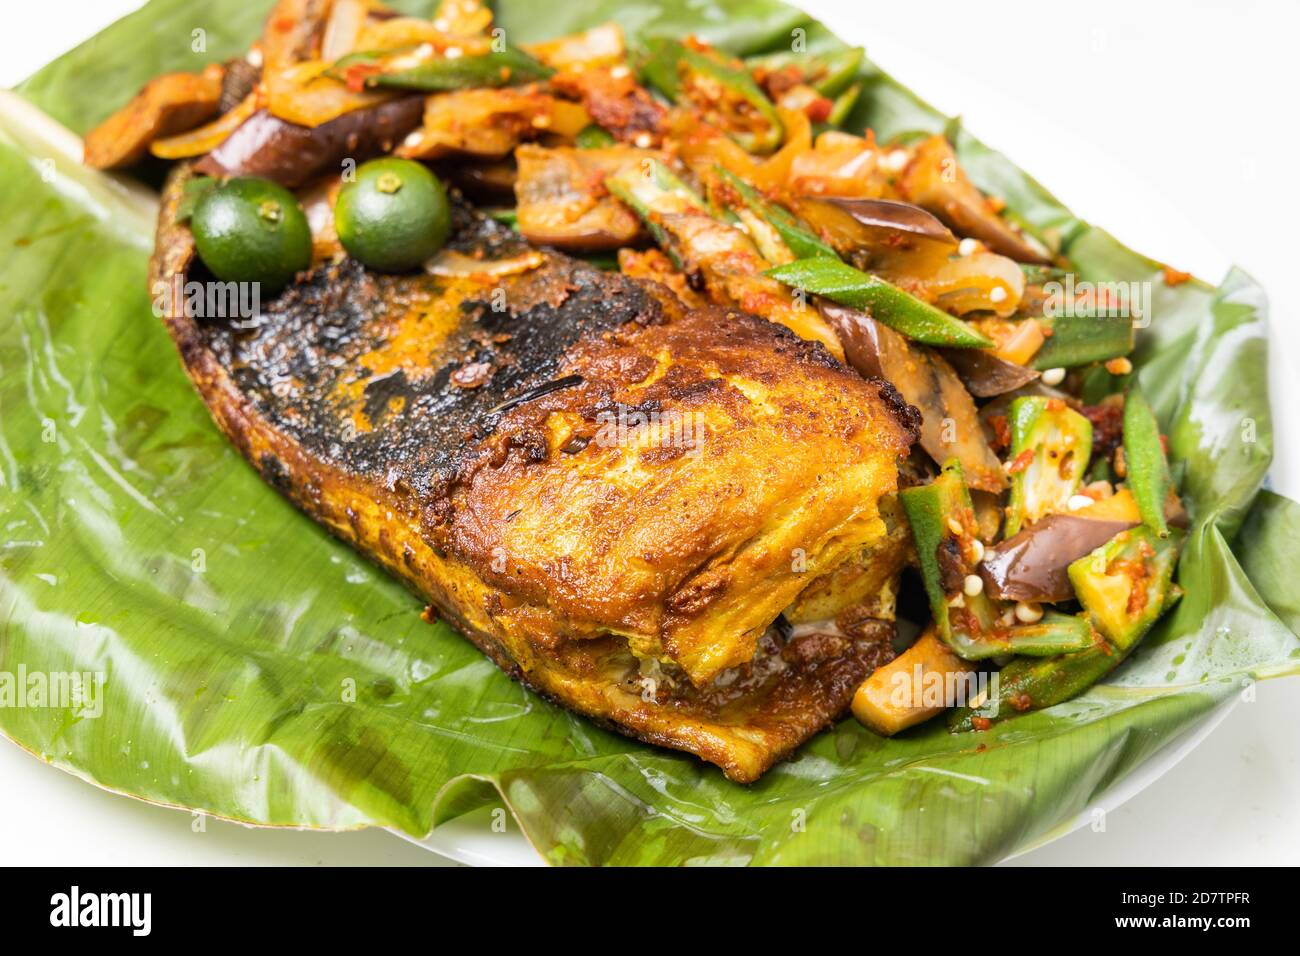 Gros plan de poissons grillés populaires aux épices et aux légumes servi sur une feuille de banane Banque D'Images